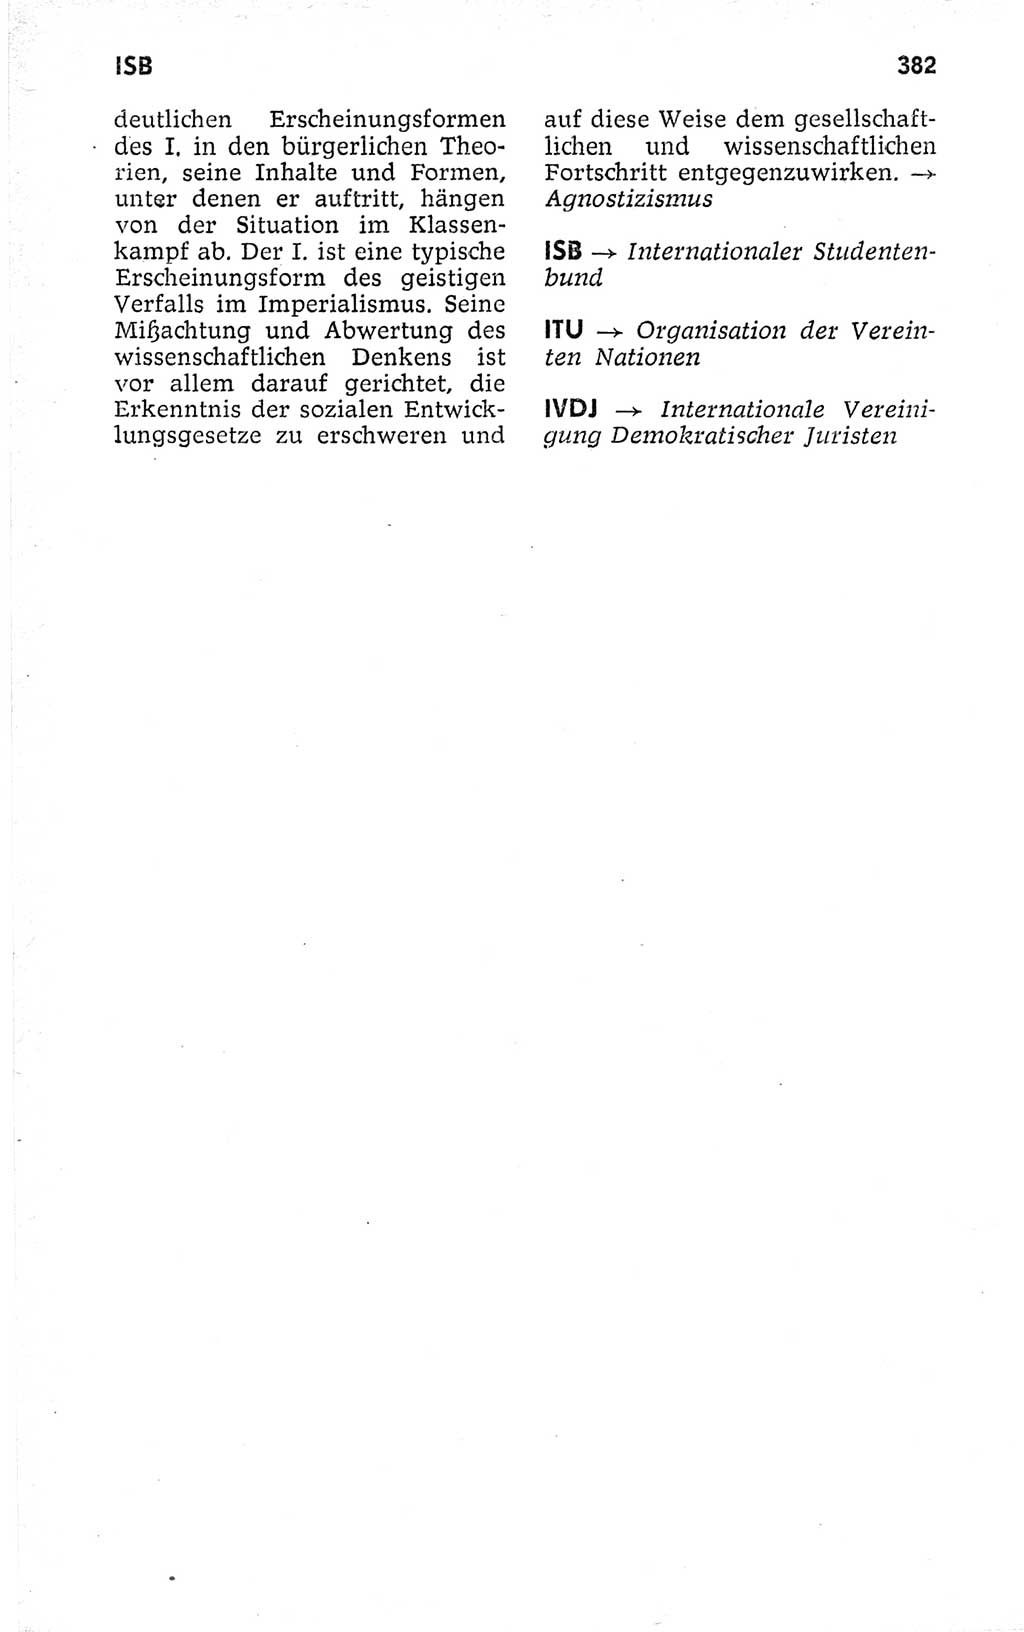 Kleines politisches Wörterbuch [Deutsche Demokratische Republik (DDR)] 1973, Seite 382 (Kl. pol. Wb. DDR 1973, S. 382)